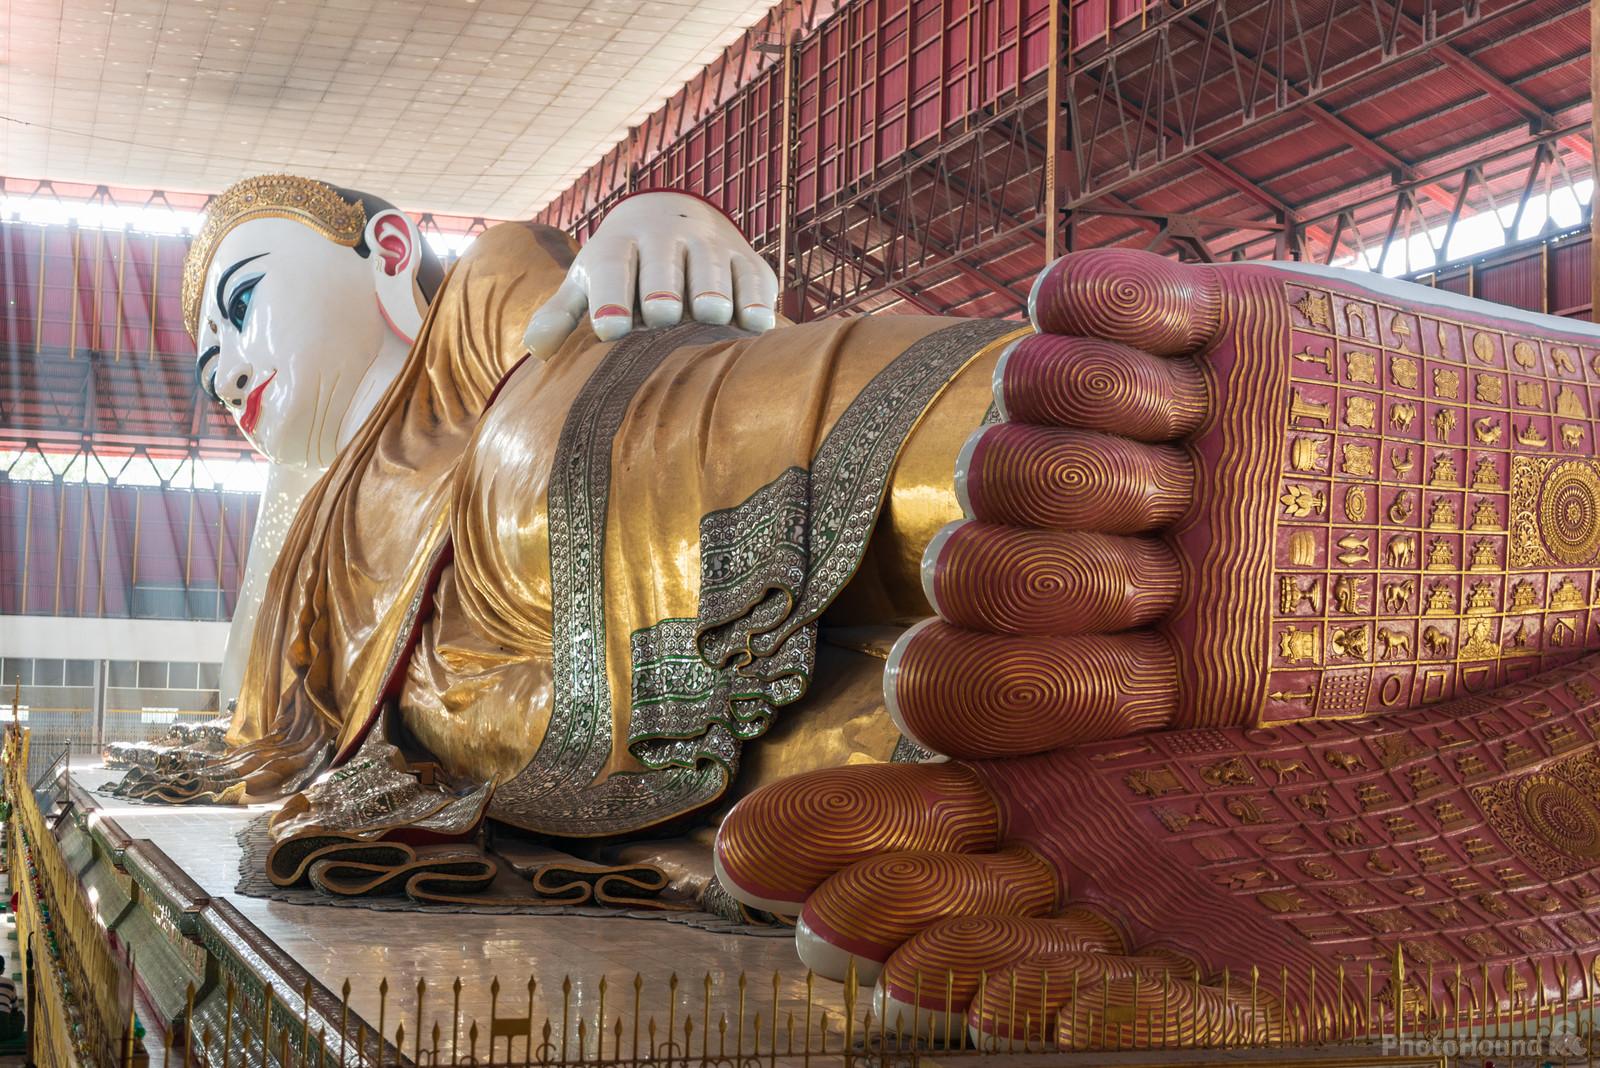 Image of Chaukhtatgyi Buddha Temple by Luka Esenko